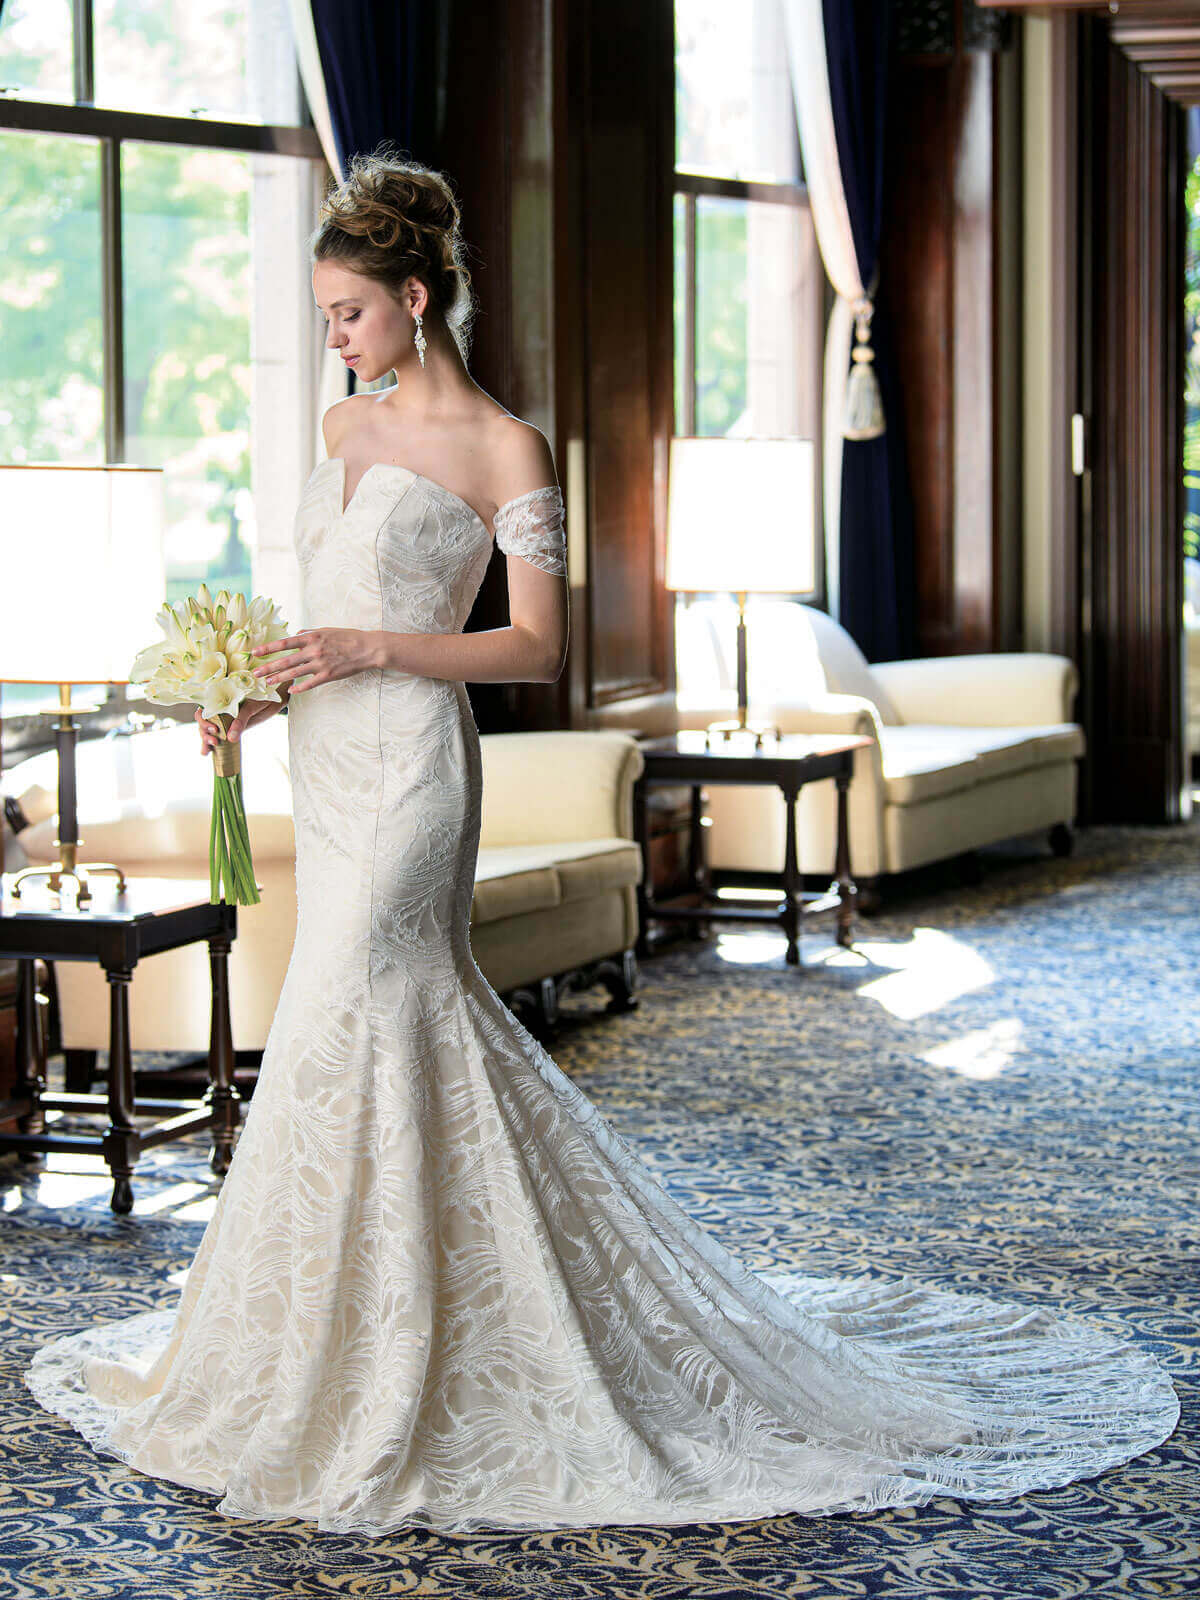 絶妙なデザイン マーメイドドレス白 ウエディングドレス 結婚式 お呼ばれ ウェディングドレス 花嫁 ブライダル 二次会 披露宴 ロングドレス挙式  フォーマルウエア 大きいサイズ